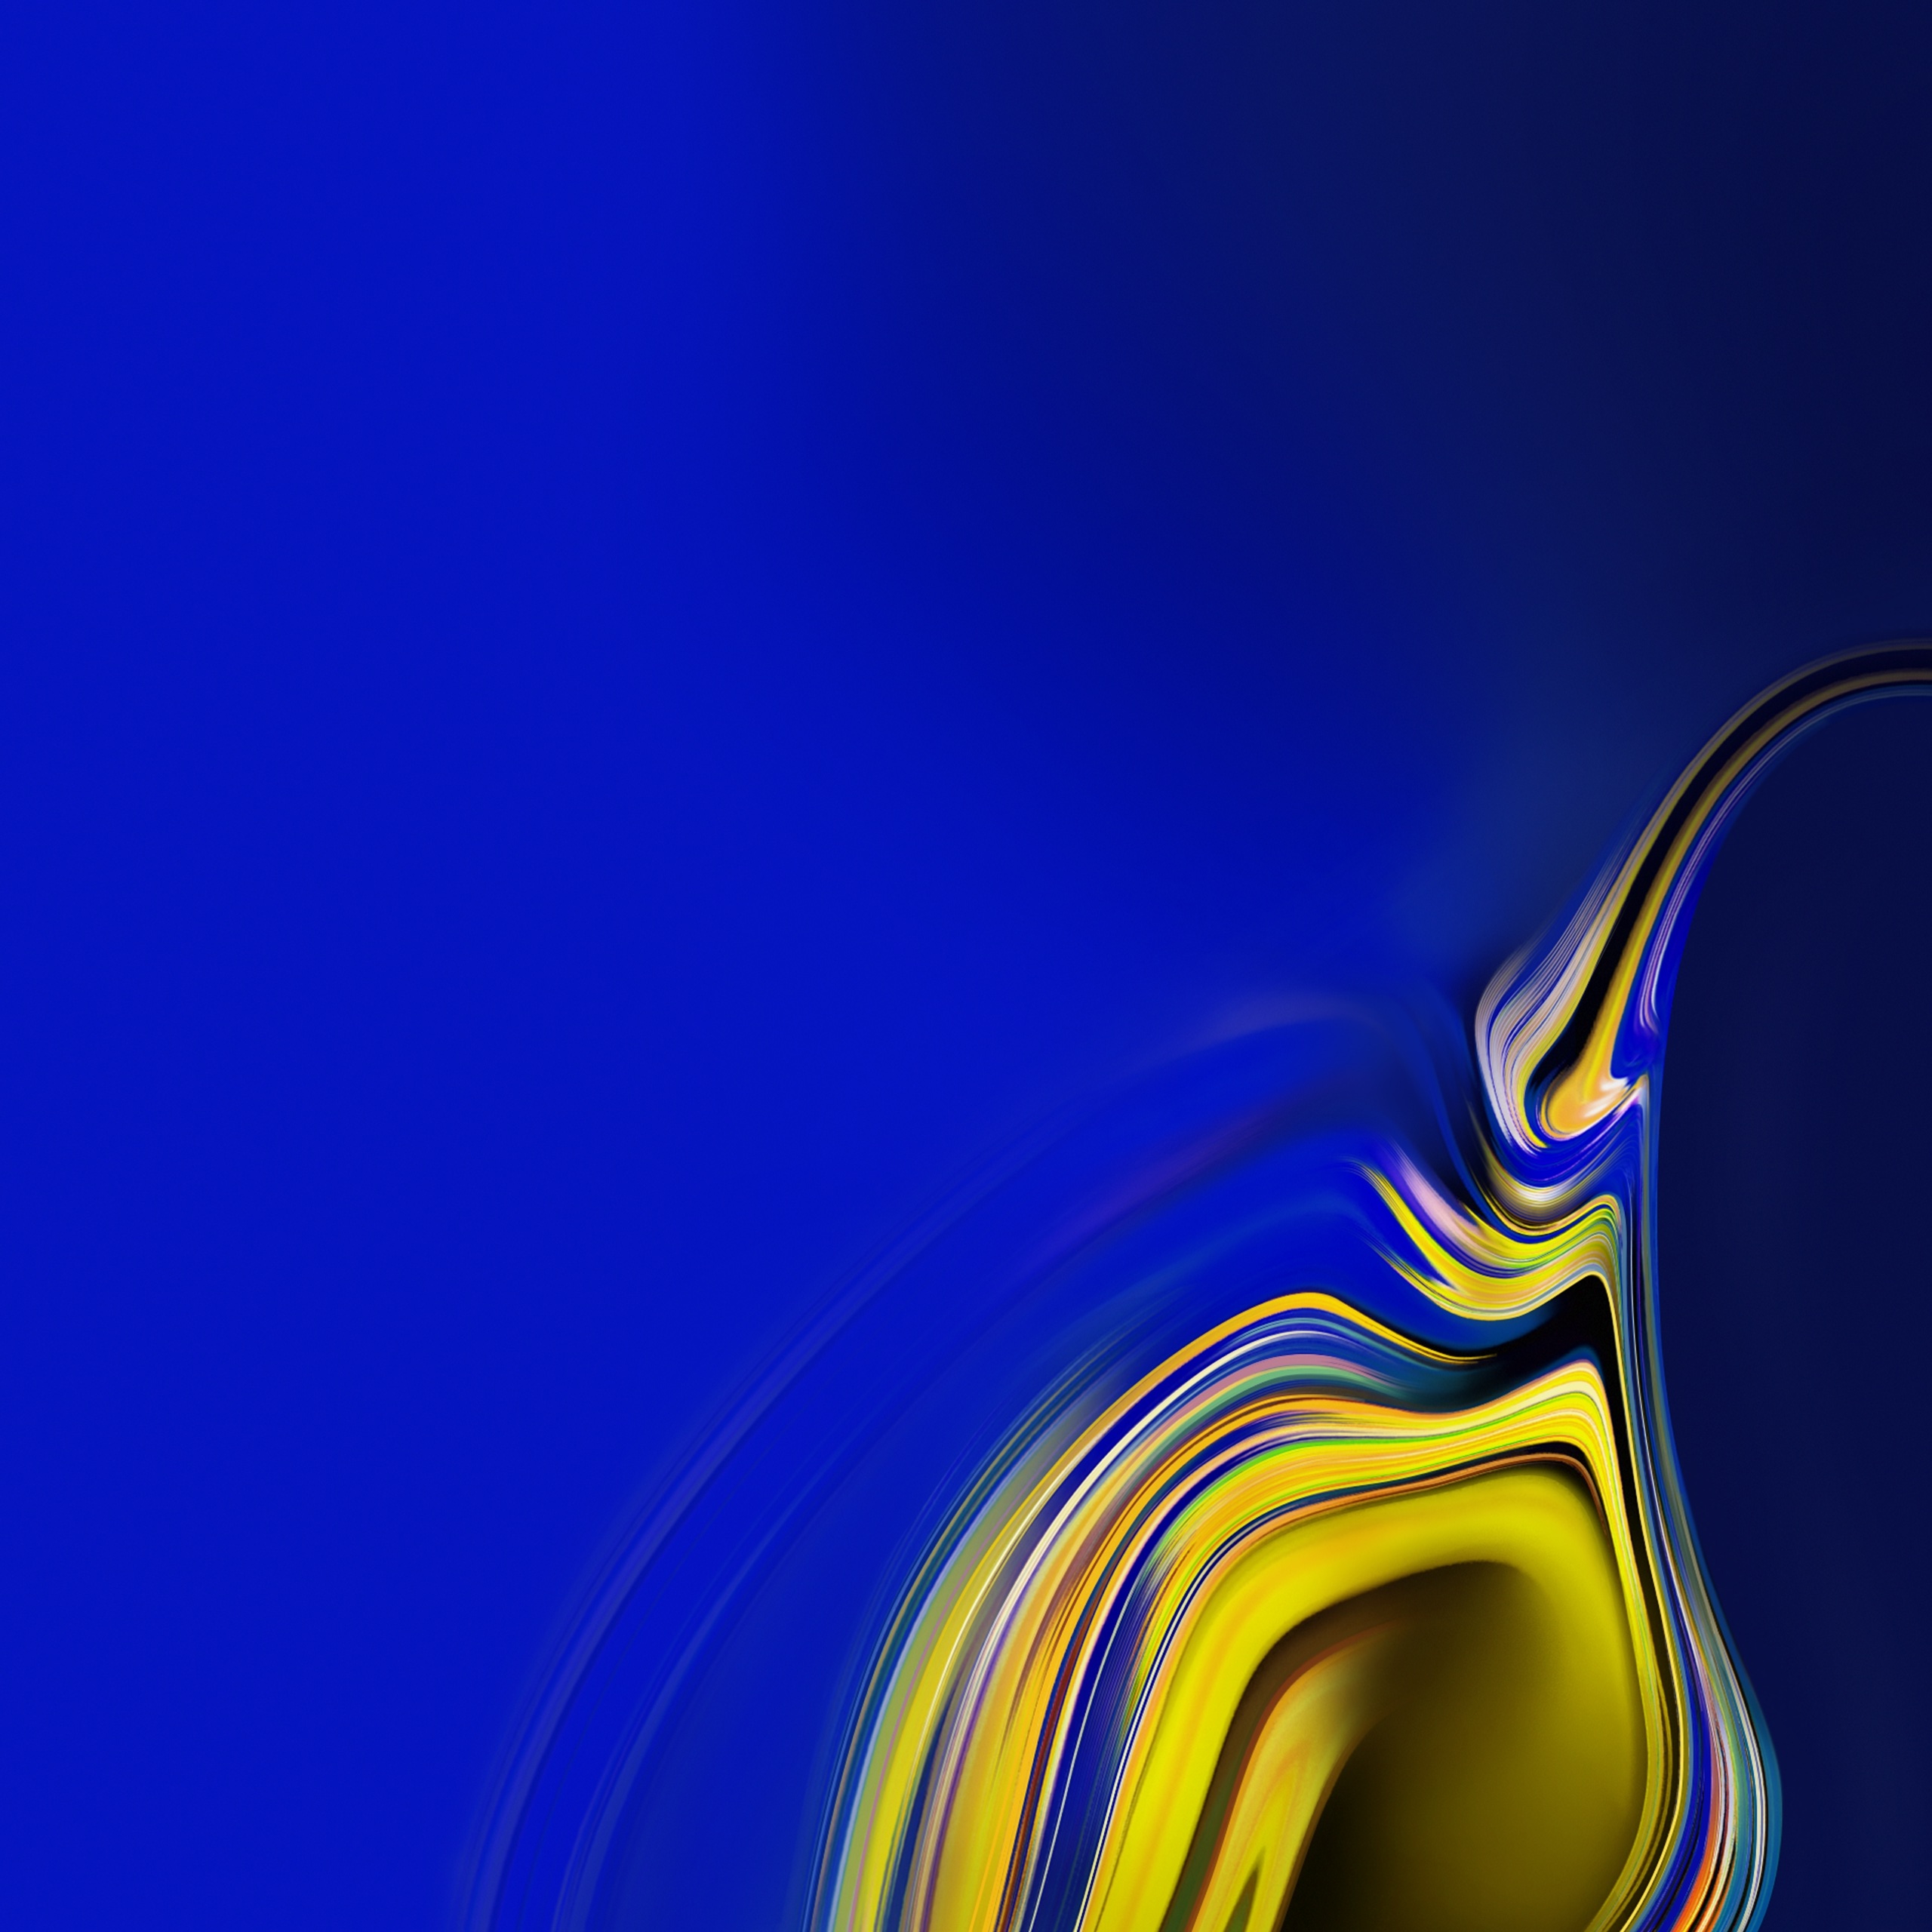 carta da parati della galassia di samsung,blu,blu cobalto,giallo,acqua,blu elettrico